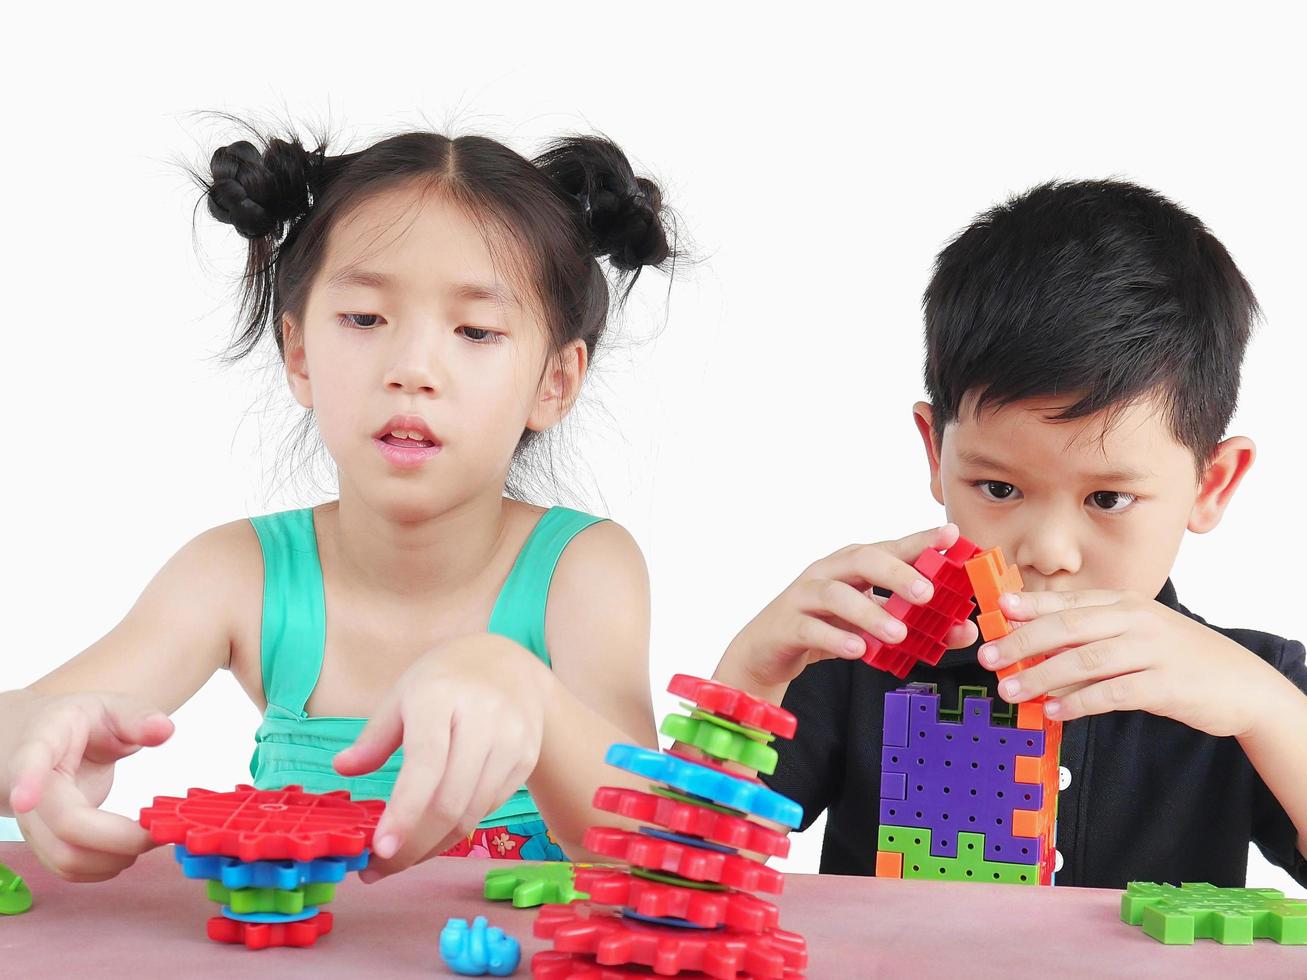 crianças asiáticas estão jogando jogo criativo de quebra-cabeça de bloco de plástico para praticar sua habilidade física e mental foto